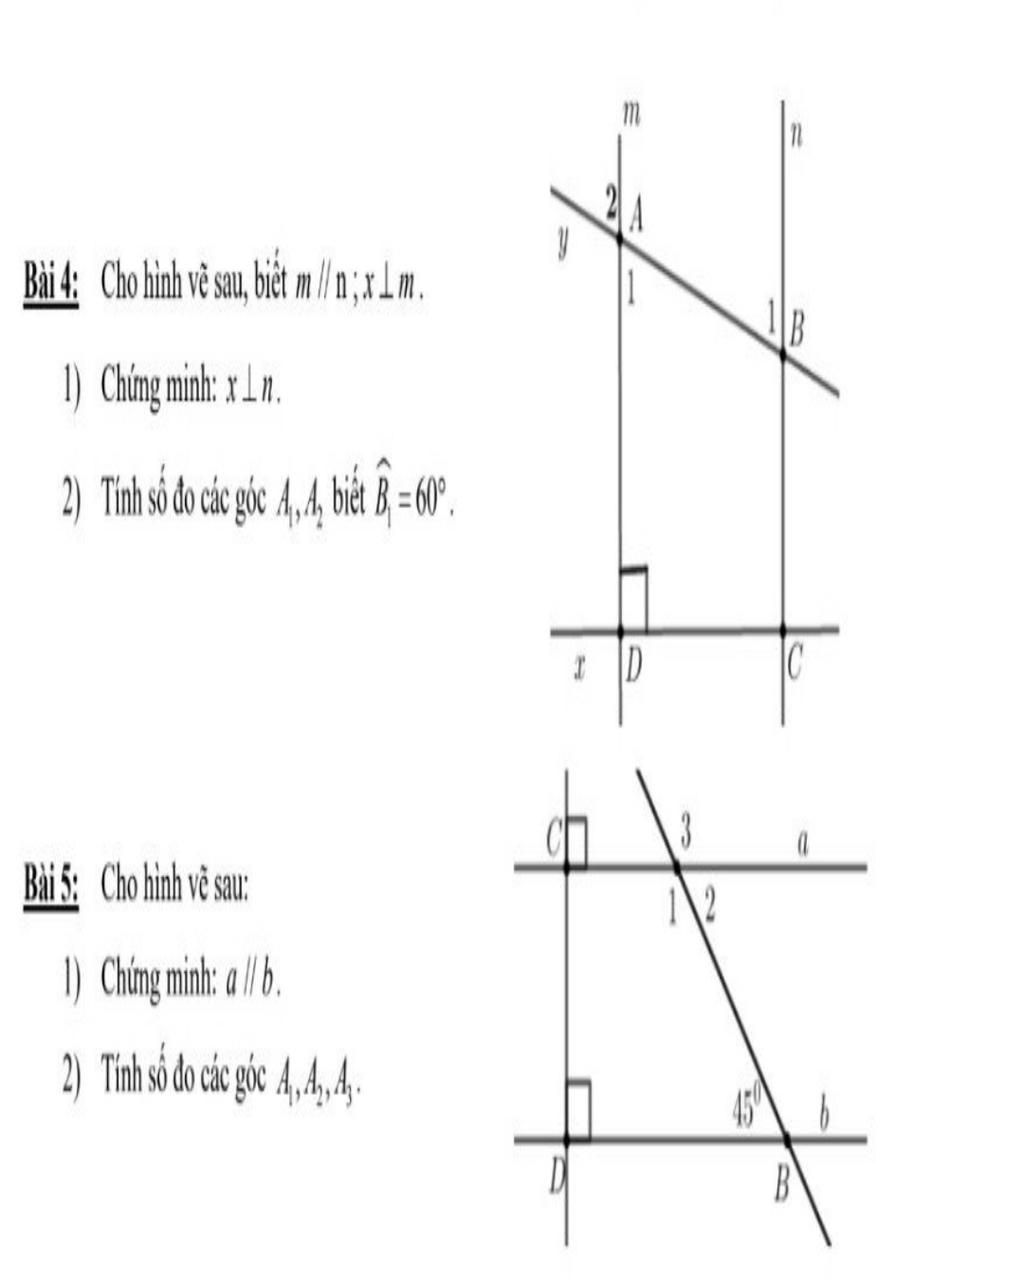 Bài 4: Cho hình vẽ sau, biết m / n ;xám. 1) Chứng minh: x _n. 2) Tính số đo  các góc 4,4h, biết Bị=60°. Bài 5: Cho hình vẽ sau: 1) Chứng minh: a || b.  2) Tí